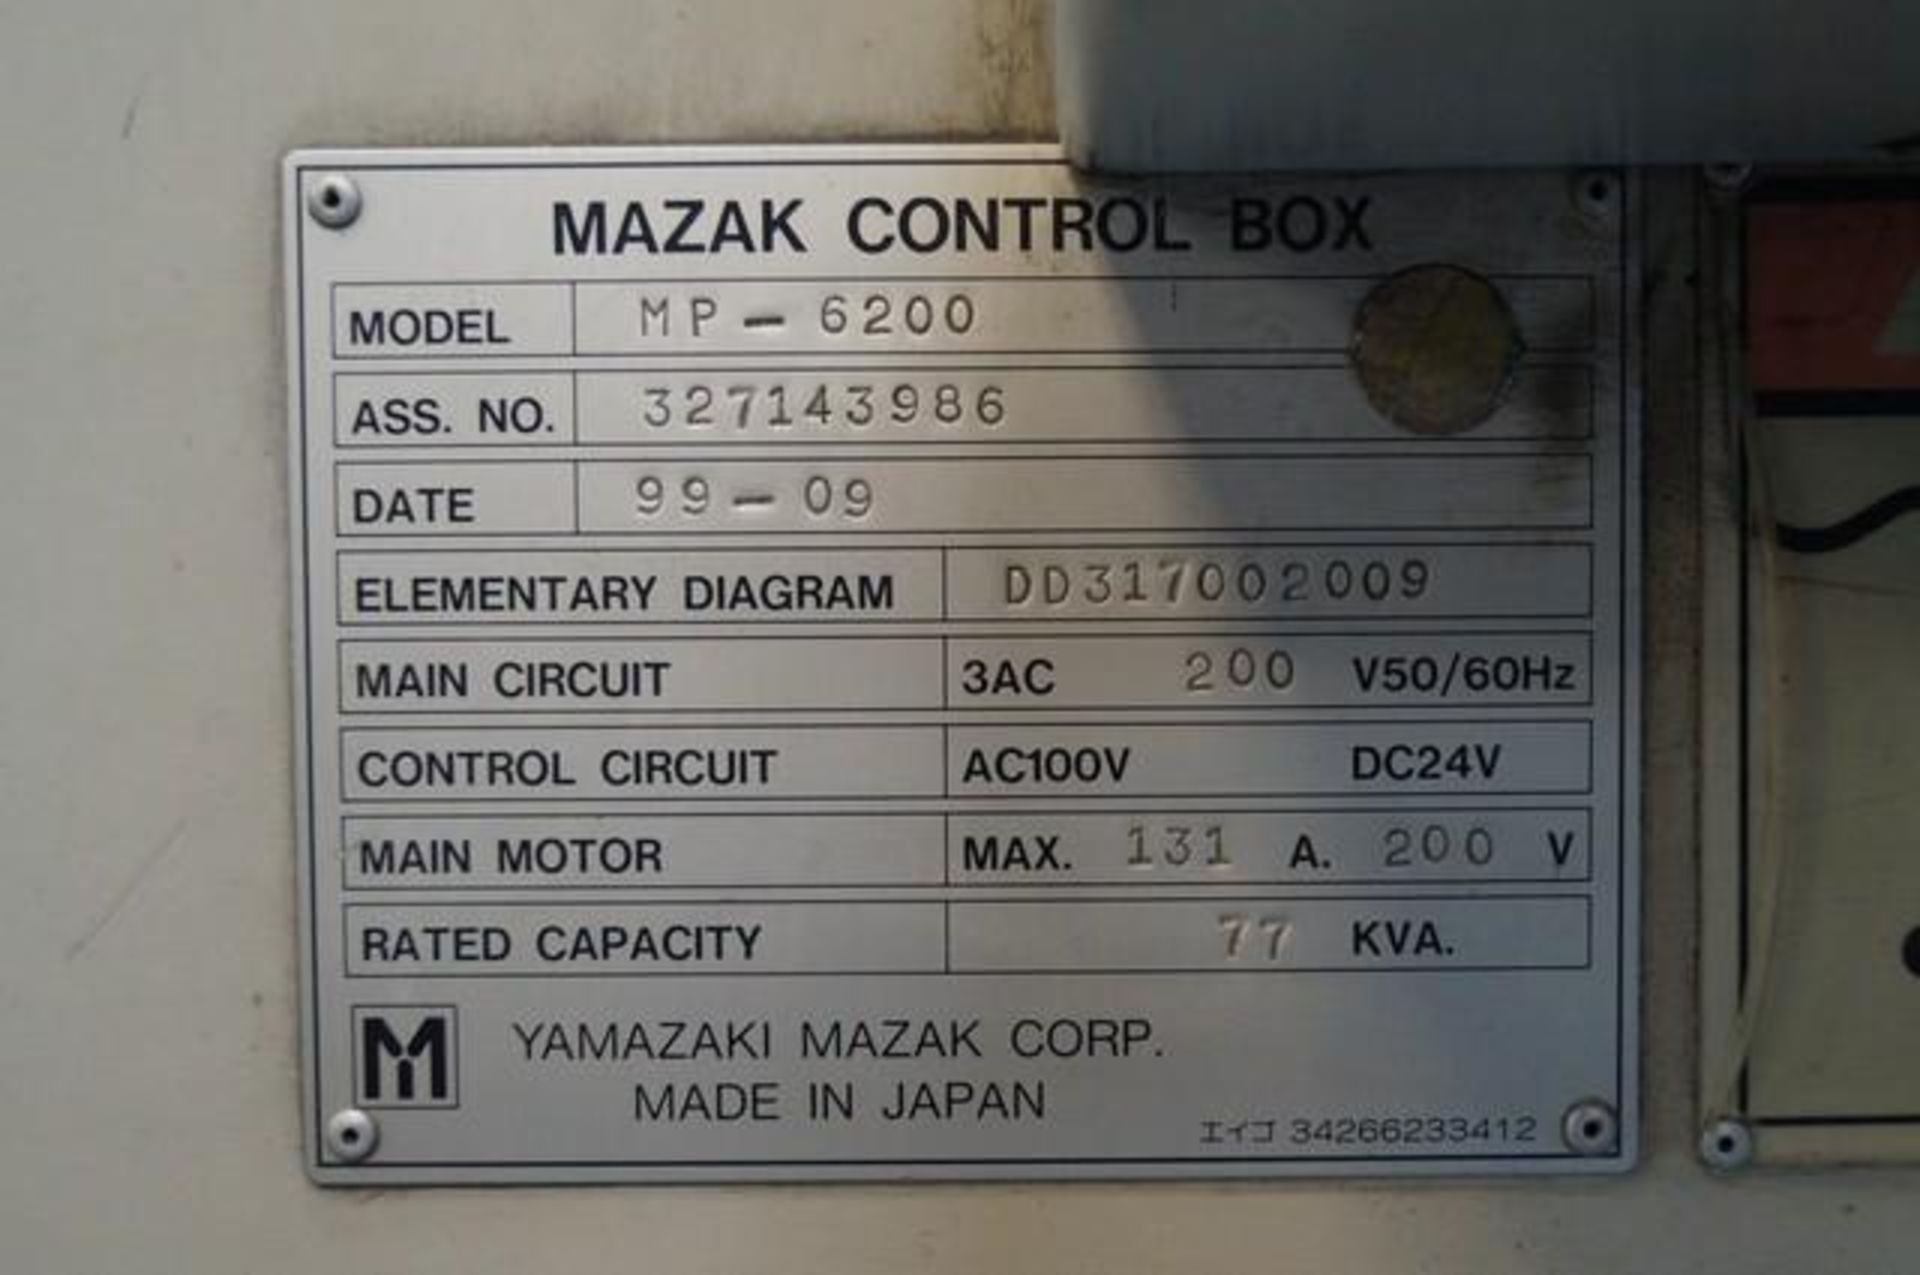 1999 MAZAK MULTIPLEX 6200 Horizontal Turning Center - Image 8 of 8